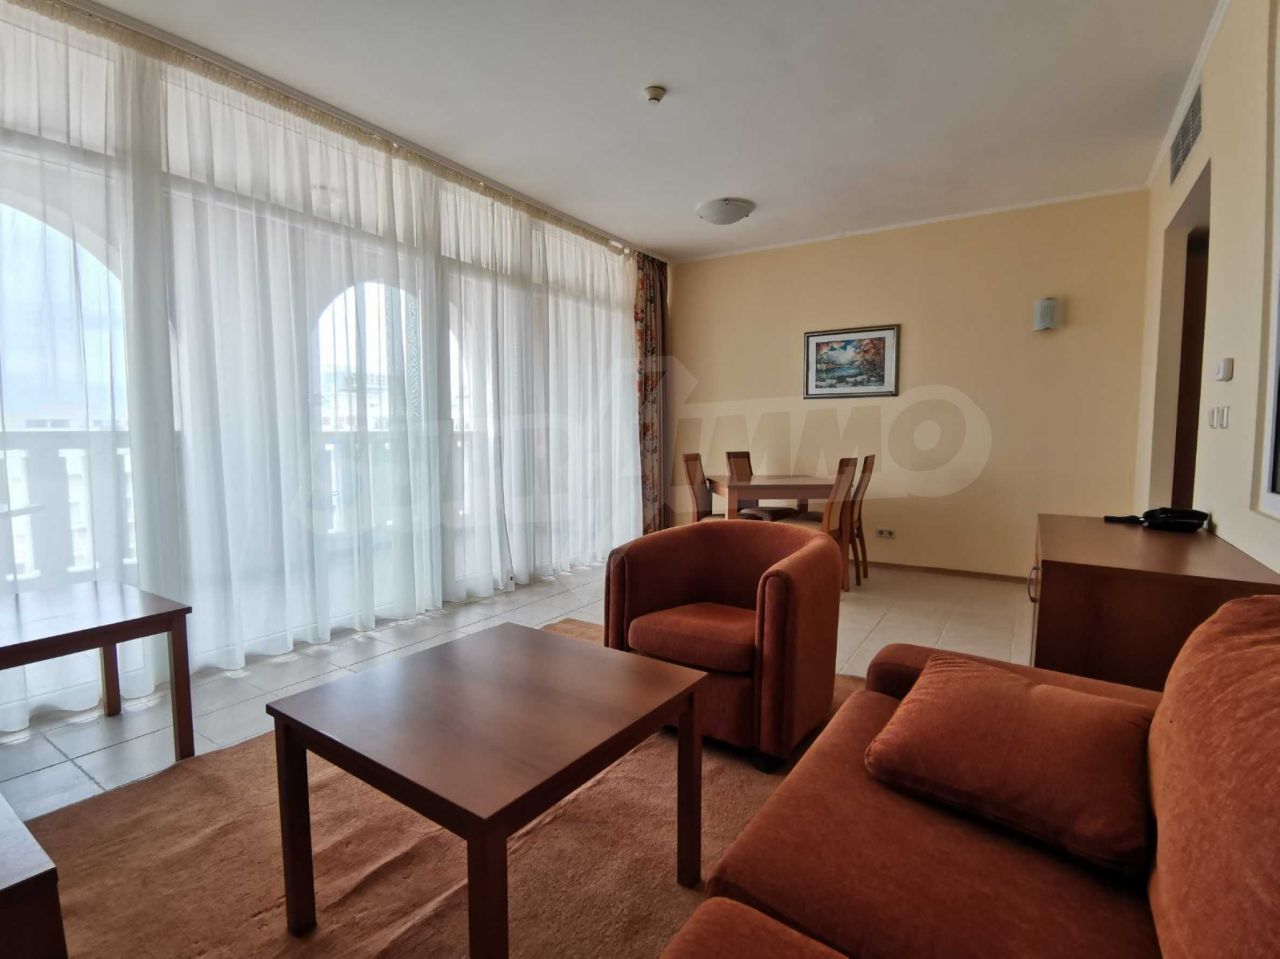 Apartment in Pomorie, Bulgaria, 72 sq.m - picture 1